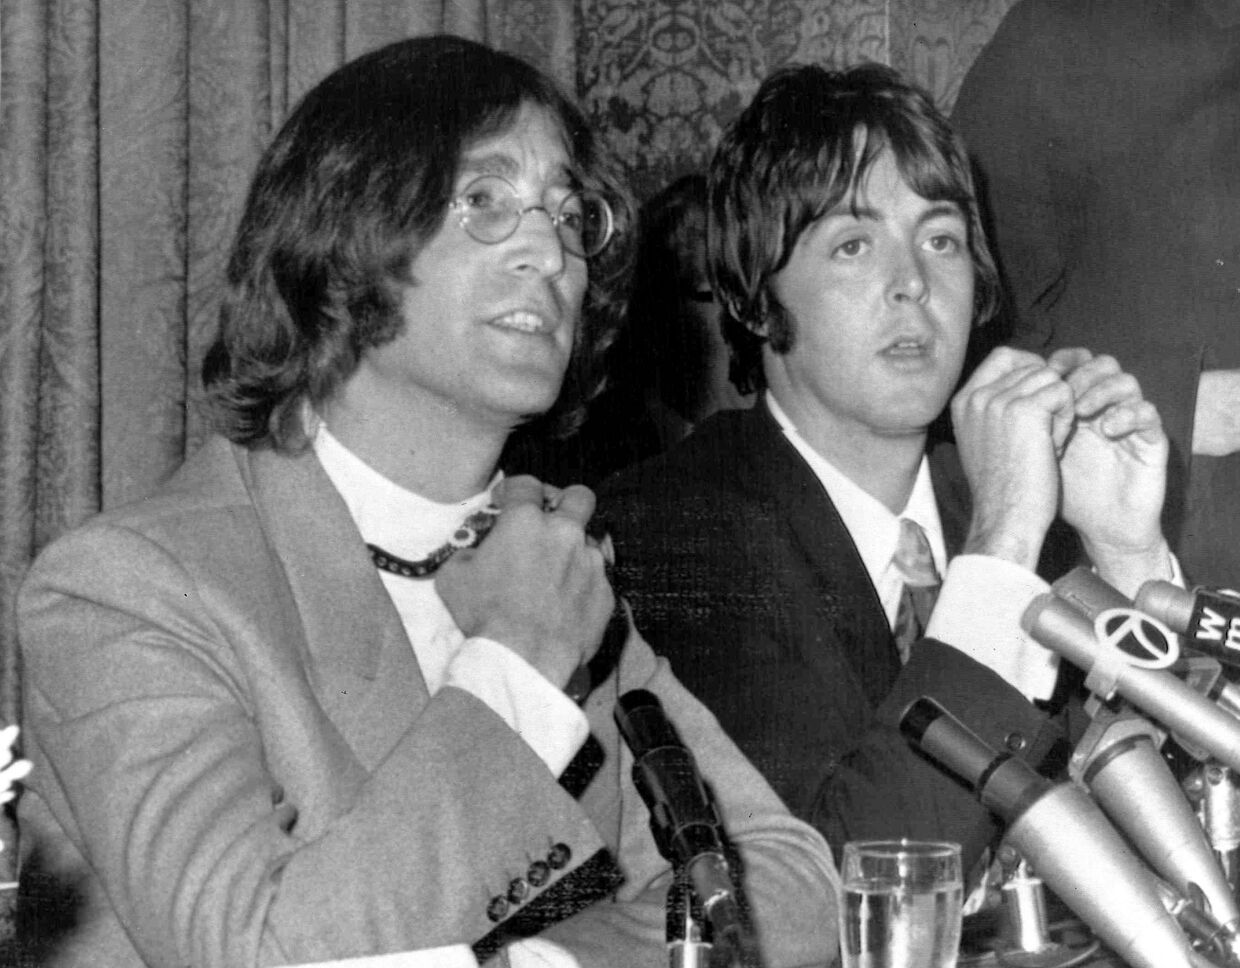 Участники британской поп-группы The Beatles Джон Леннон и Пол Маккартни